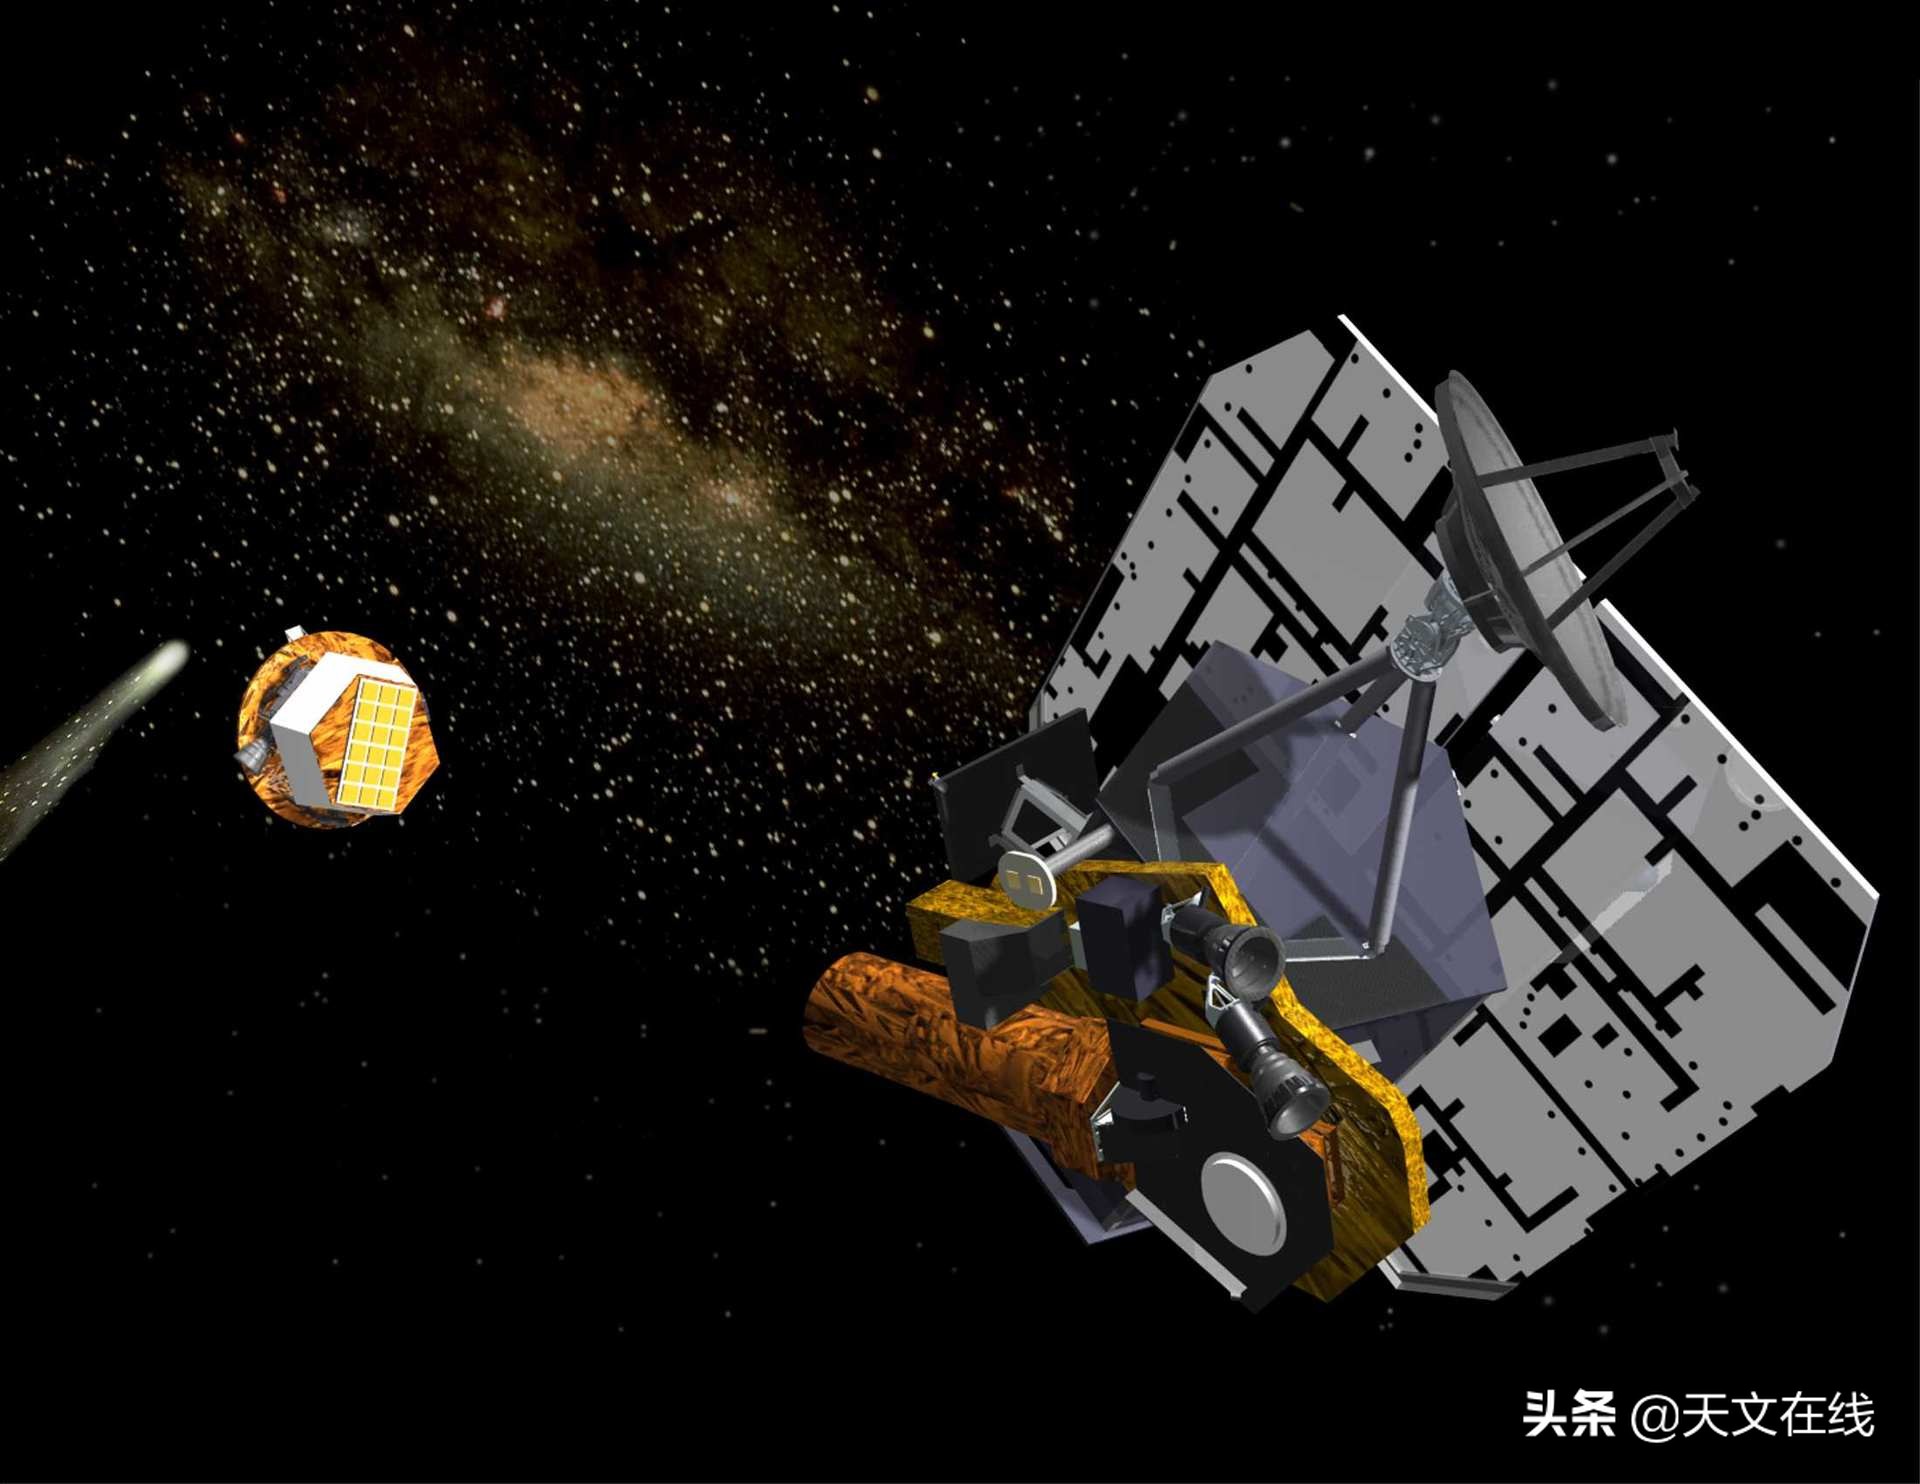 小行星航天器碰撞研究任务在欧洲正式启动